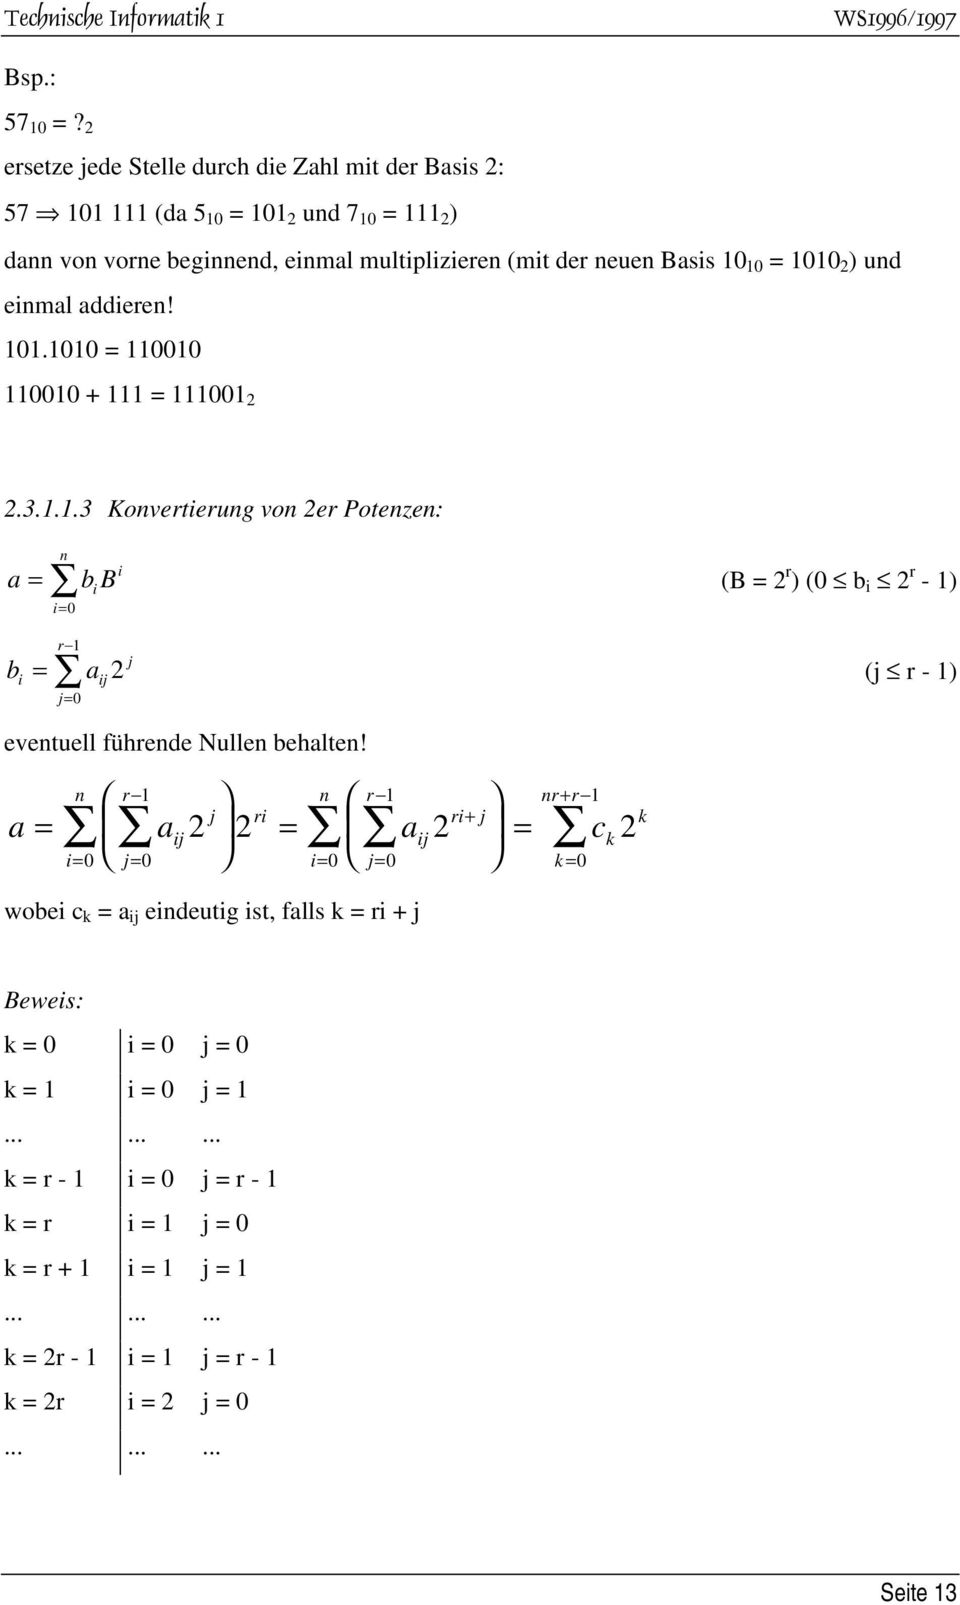 ) und enmal adderen! 101.1010 = 110010 110010 + 111 = 111001 2 2.3.1.1.3 Konverterung von 2er Potenzen: a = n = 0 bb (B = 2 r ) (0 b 2 r - 1) b r 1 = aj2 j= 0 j (j r - 1) eventuell führende Nullen behalten!